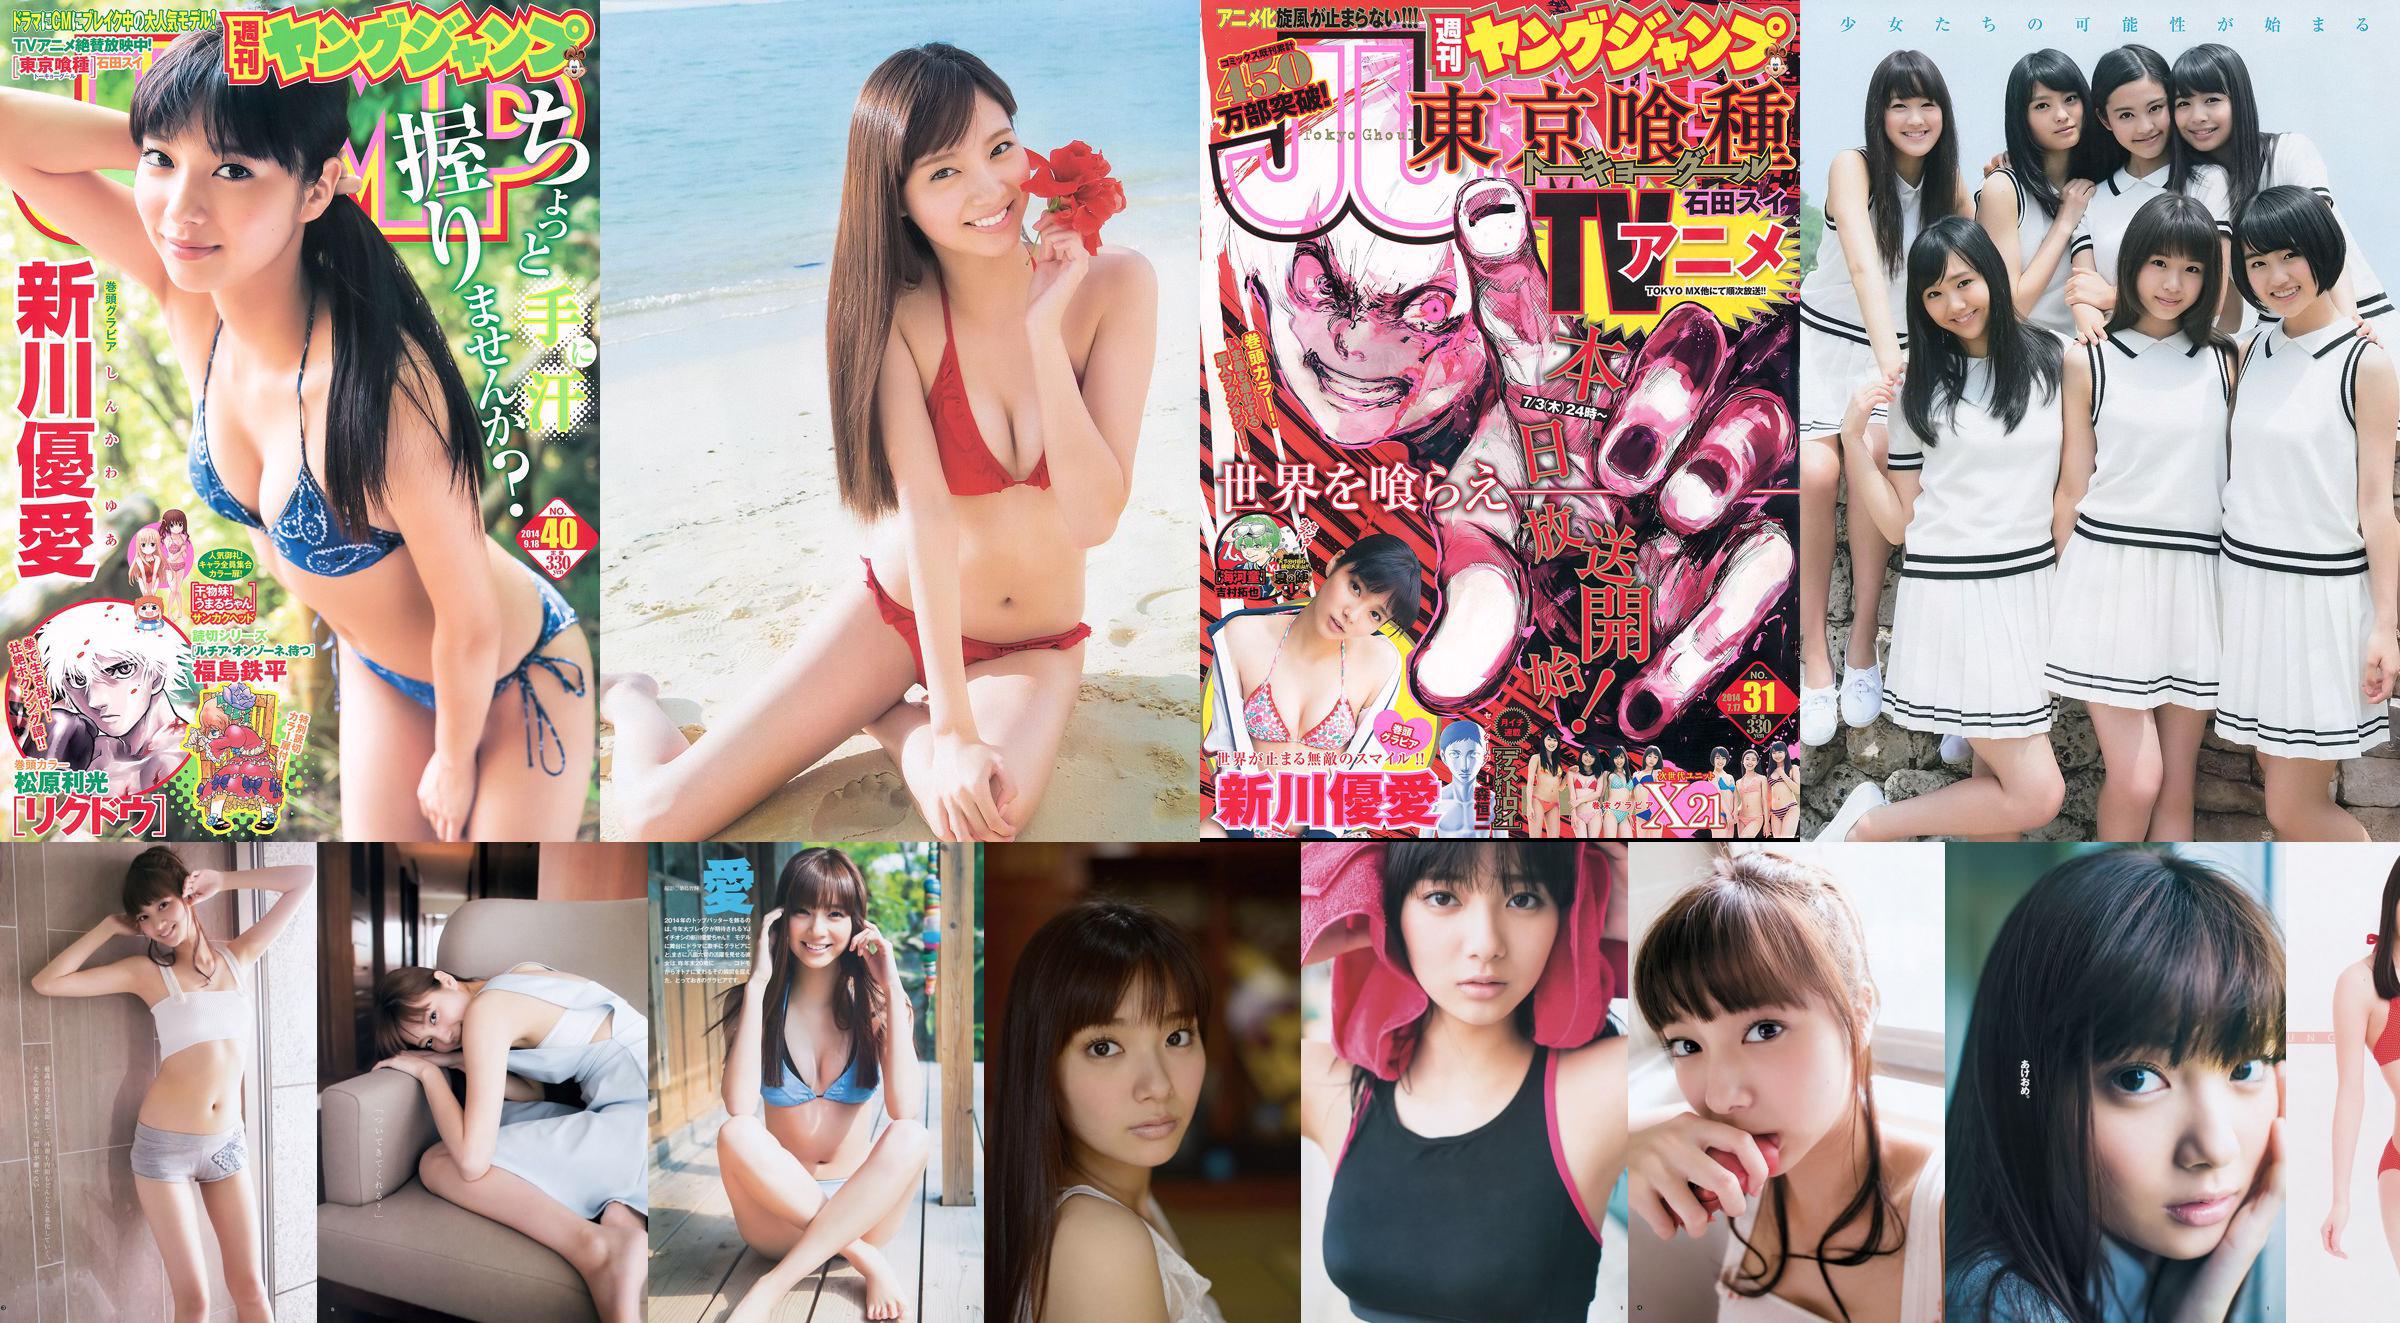 Yua Shinkawa 48 Groupe Hinako Kinoshita [Saut hebdomadaire des jeunes] 2014 No.06-07 Photographie No.77c0f1 Page 1